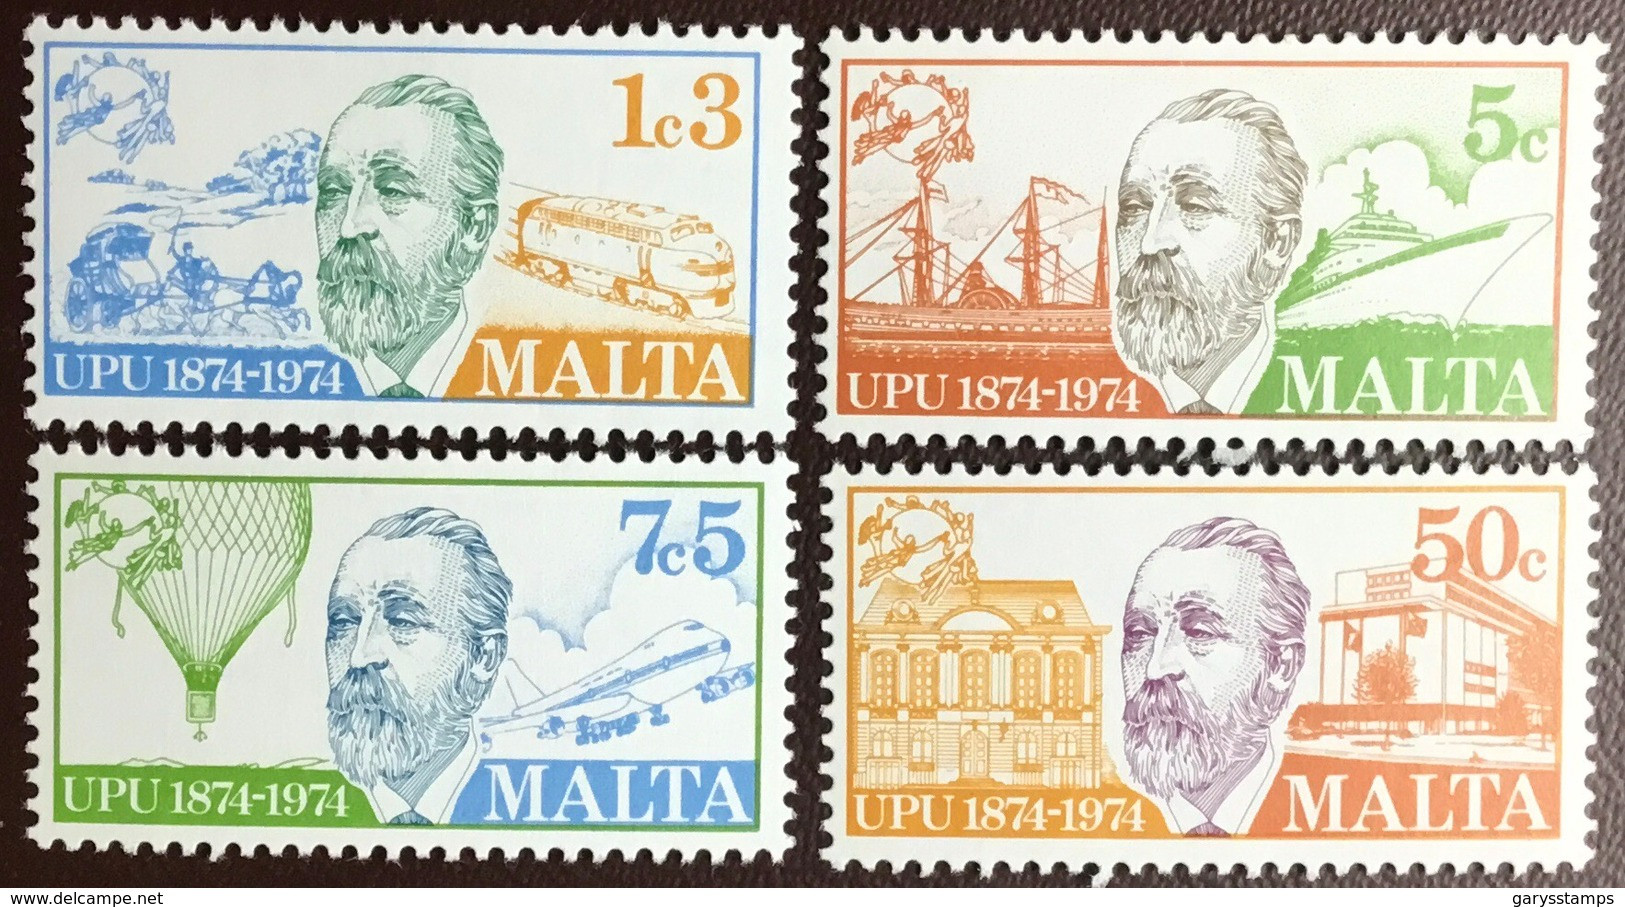 Malta 1974 UPU MNH - Malte